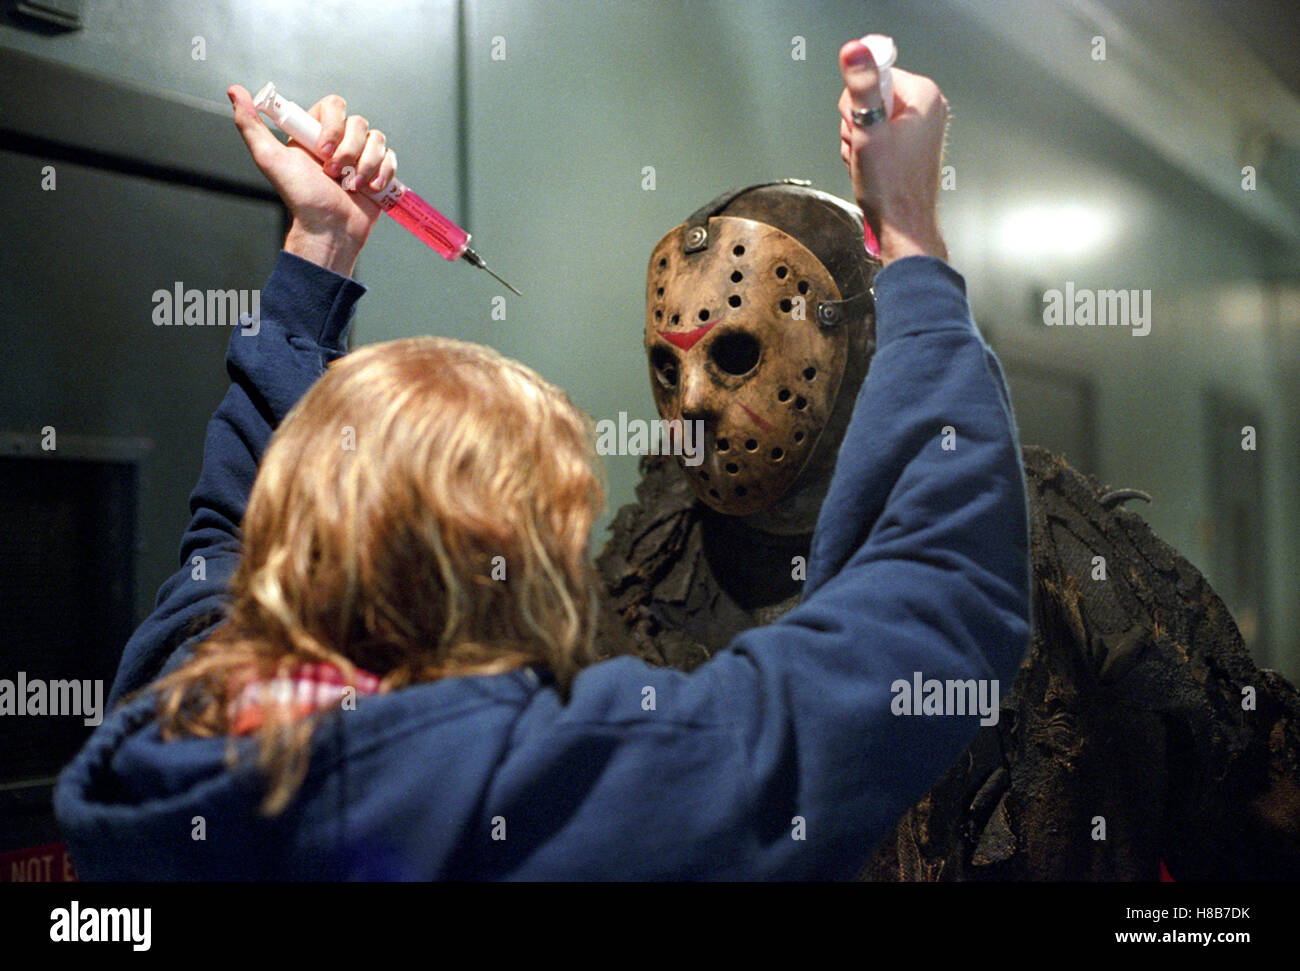 Freddie vs. Jason, (FREDDY VS. JASON) USA 2003, Regie: Ronnie Yu, KEN KIRZINGER, Key: Maske, Monster, Spritze Stock Photo